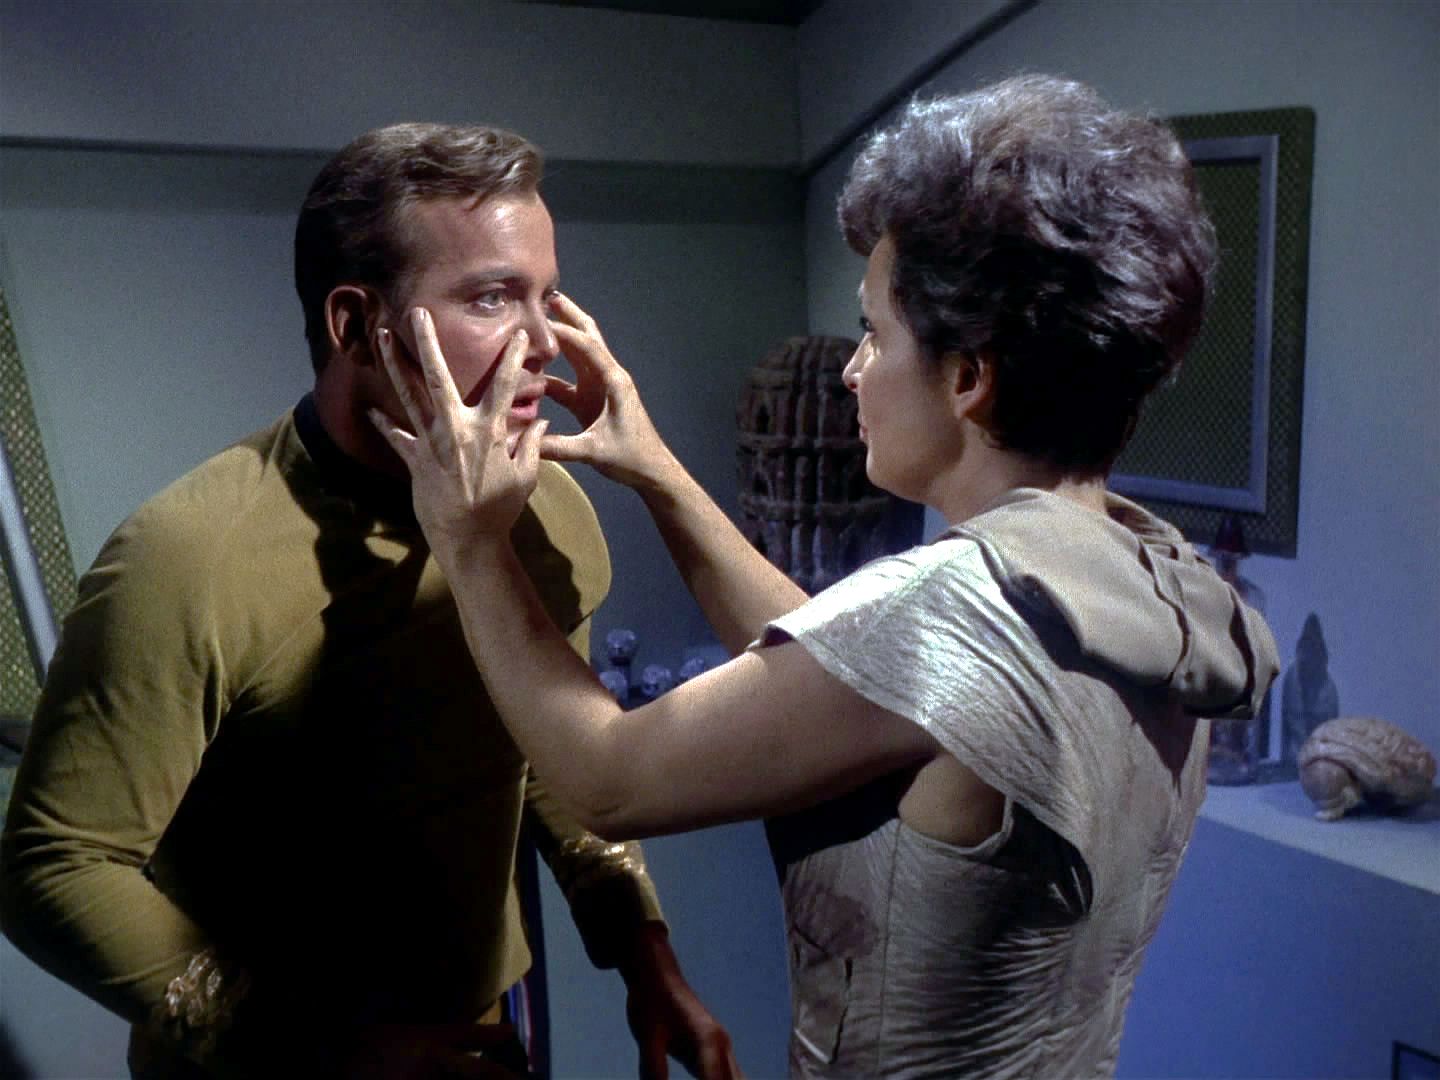 Teprve když se "Nancy" vrhne na Kirka, aby ho paralyzovala a vysála mu sůl, doktor uvěří a vystřelí.